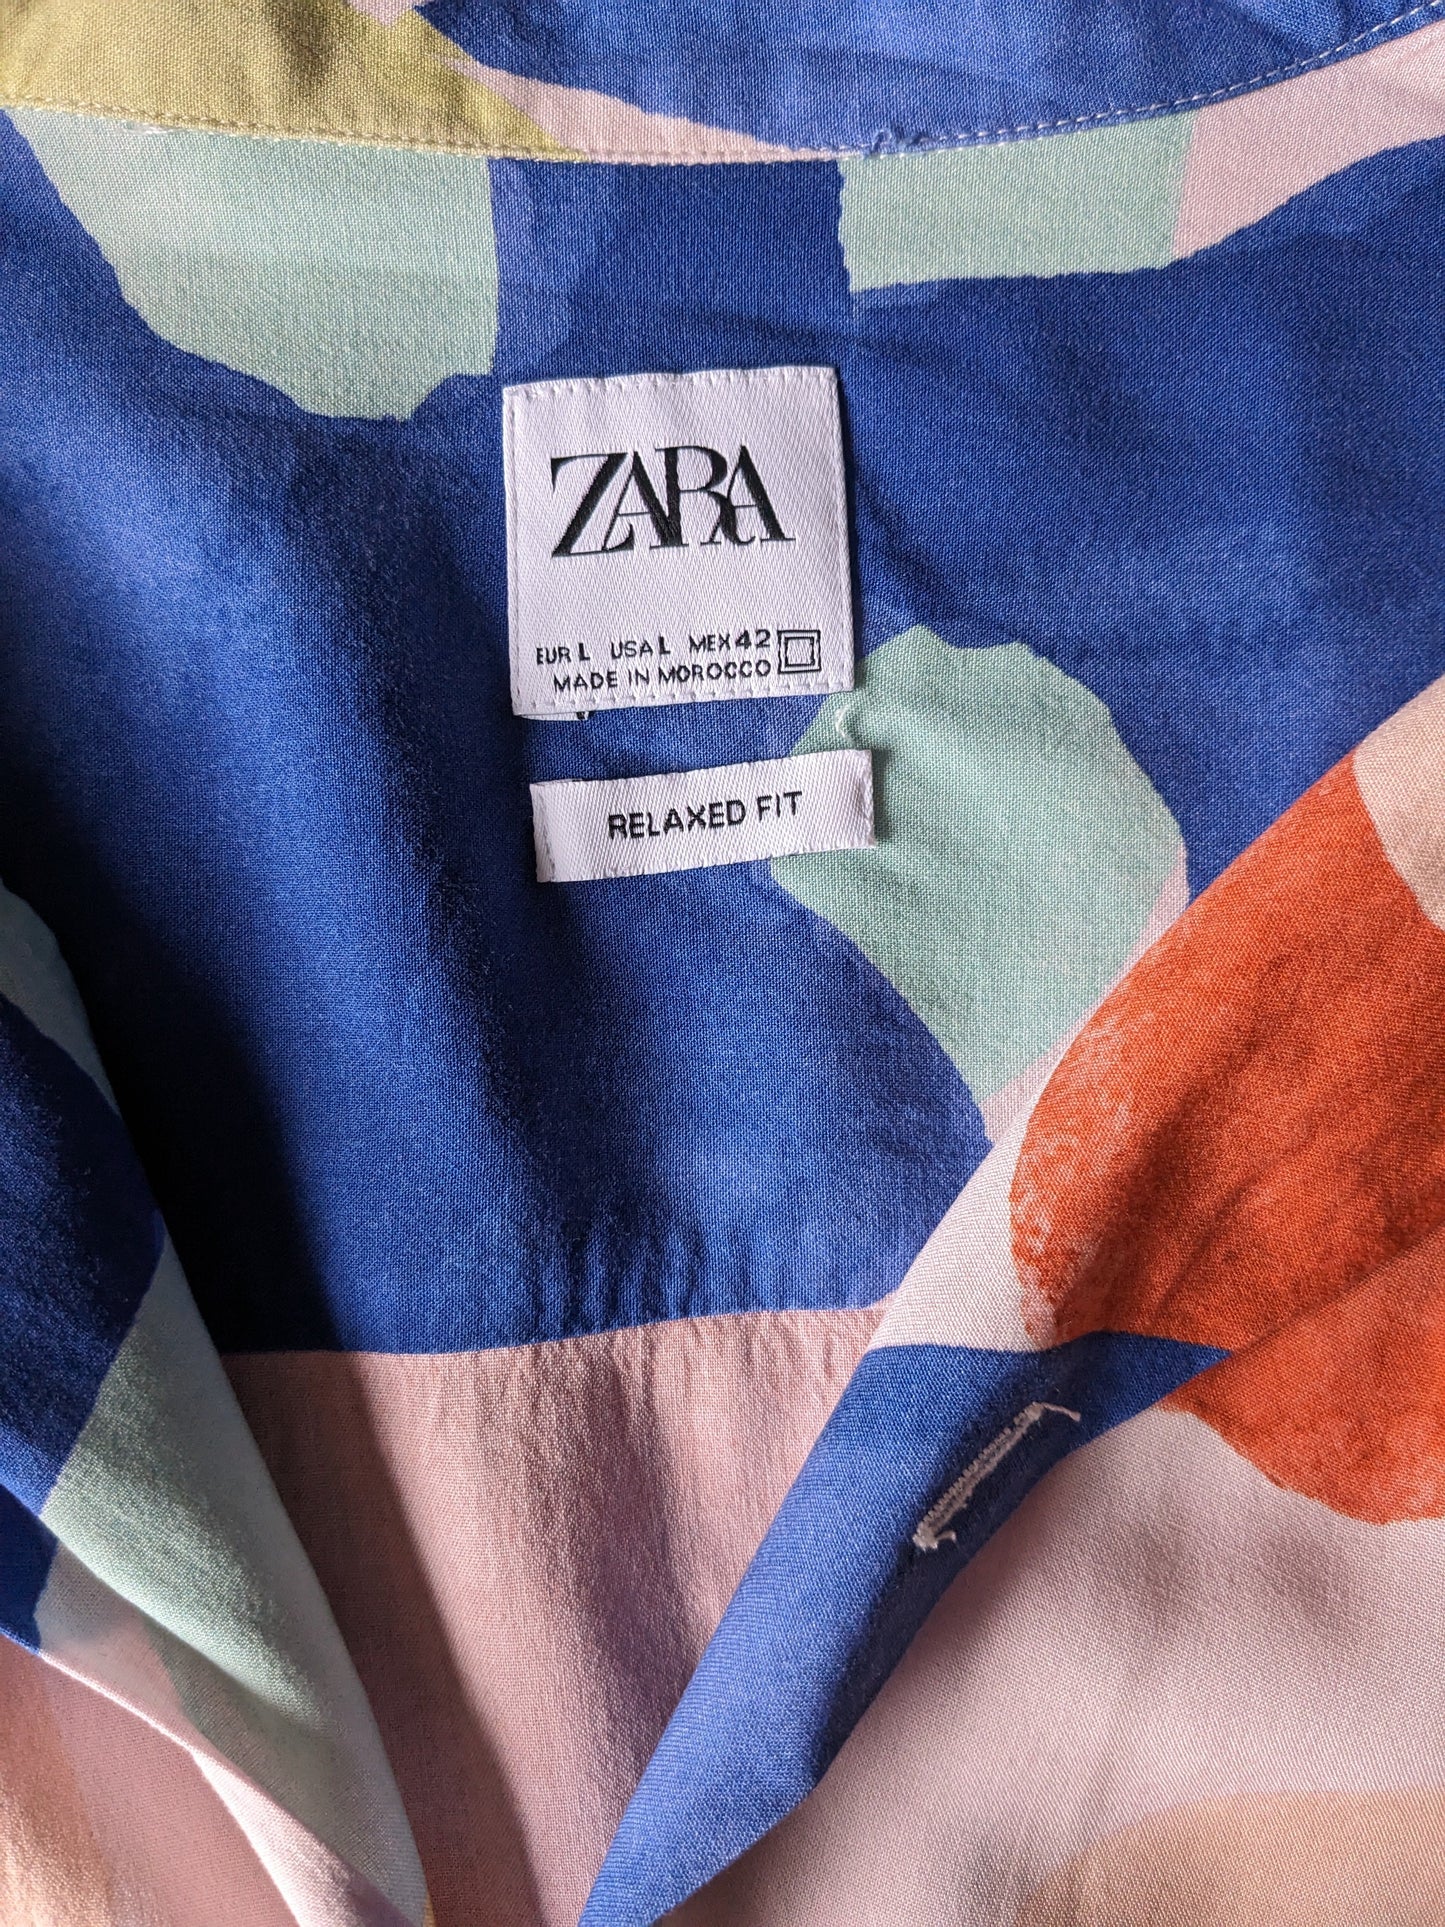 Zara -Druckhemd Kurzarm. Rosa orange gelb blau grün druck. Größe L. Entspannte Passform.